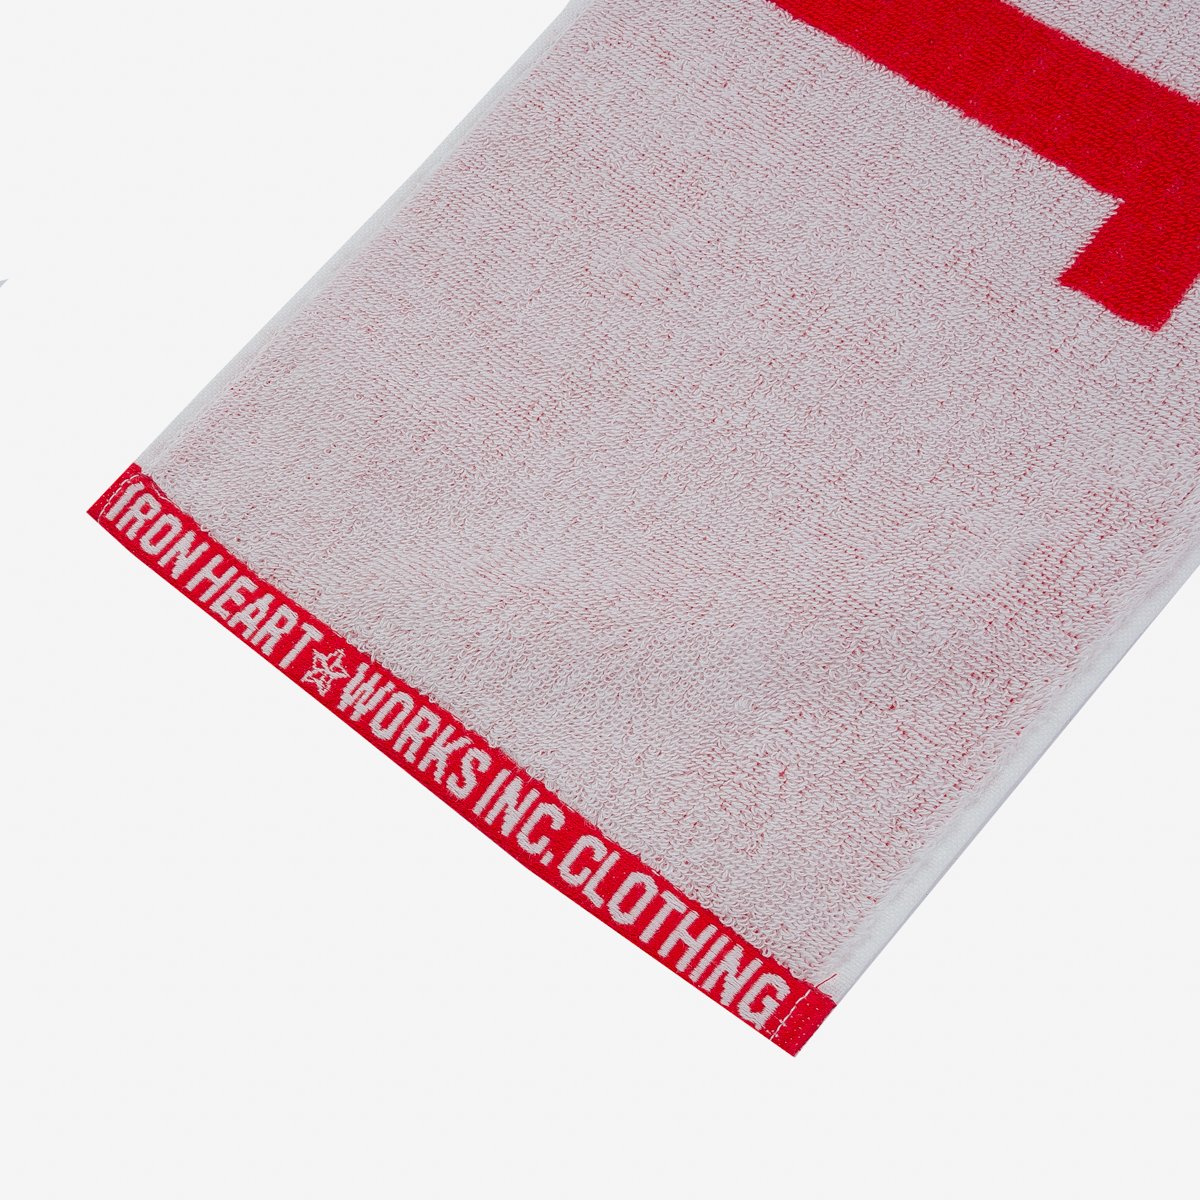 Iron Heart - Ihg-065 Small Imabari Towel - Red/White